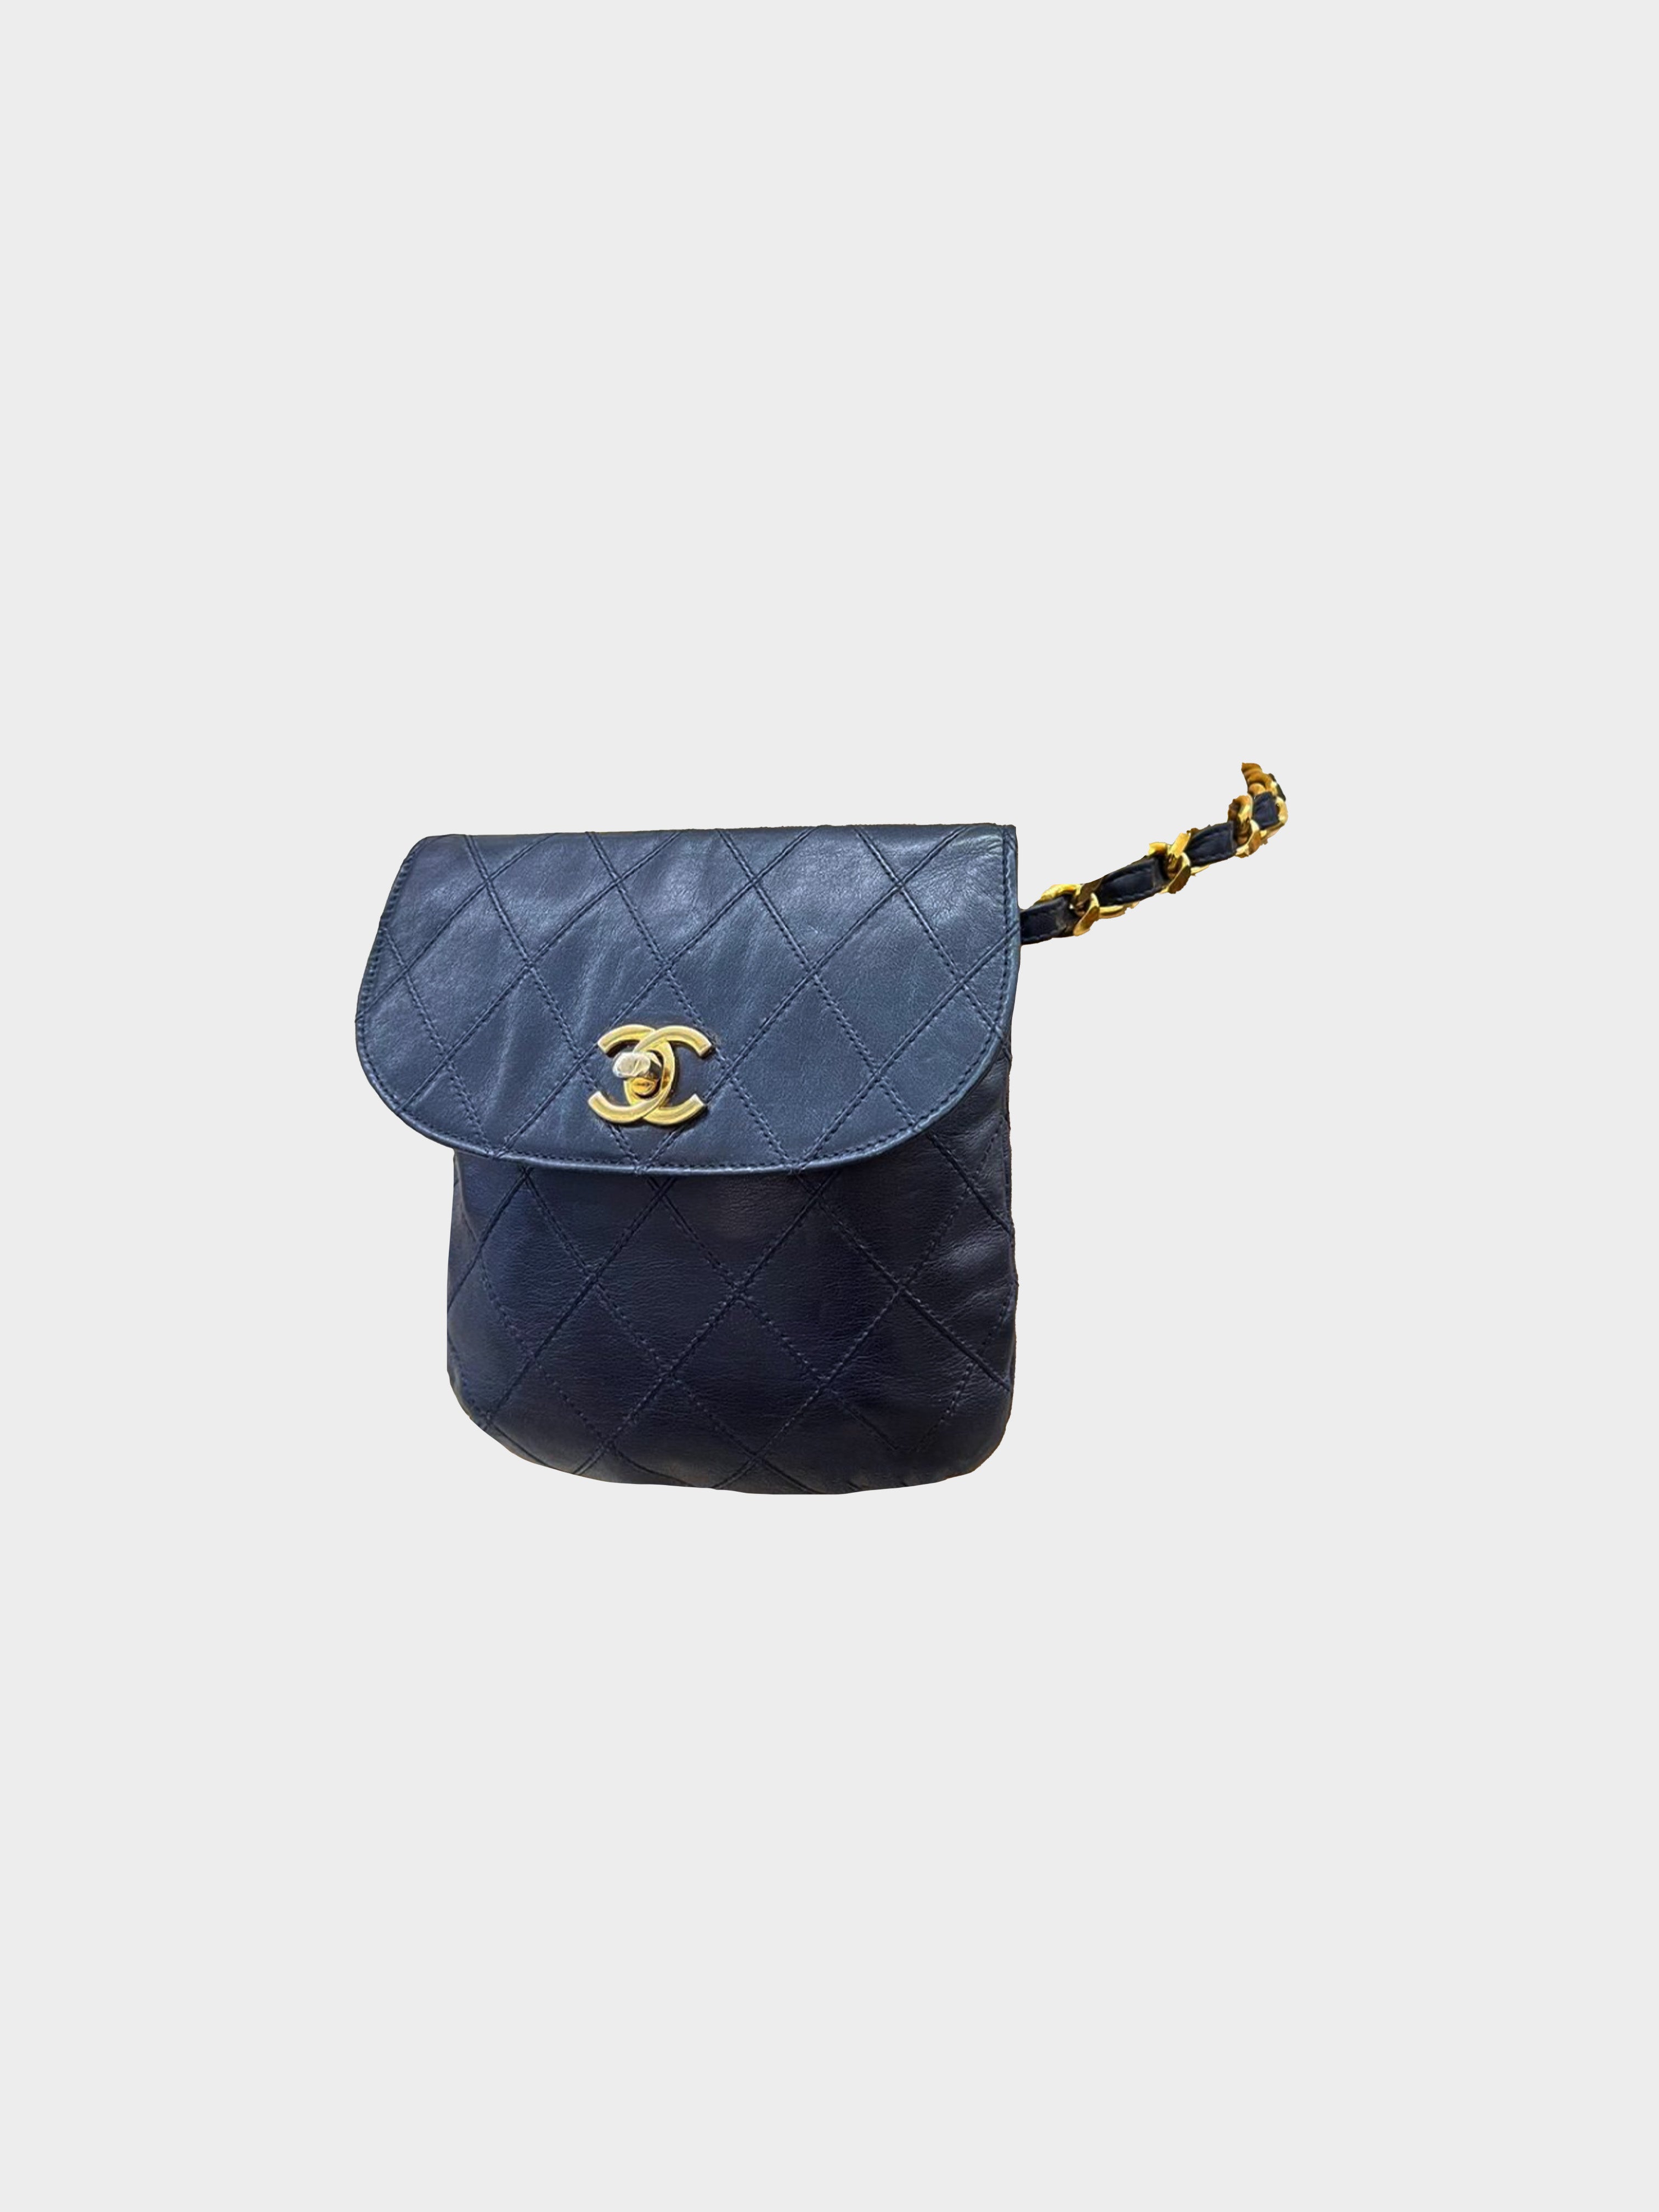 Chanel 1980s Navy Blue Belt Bag